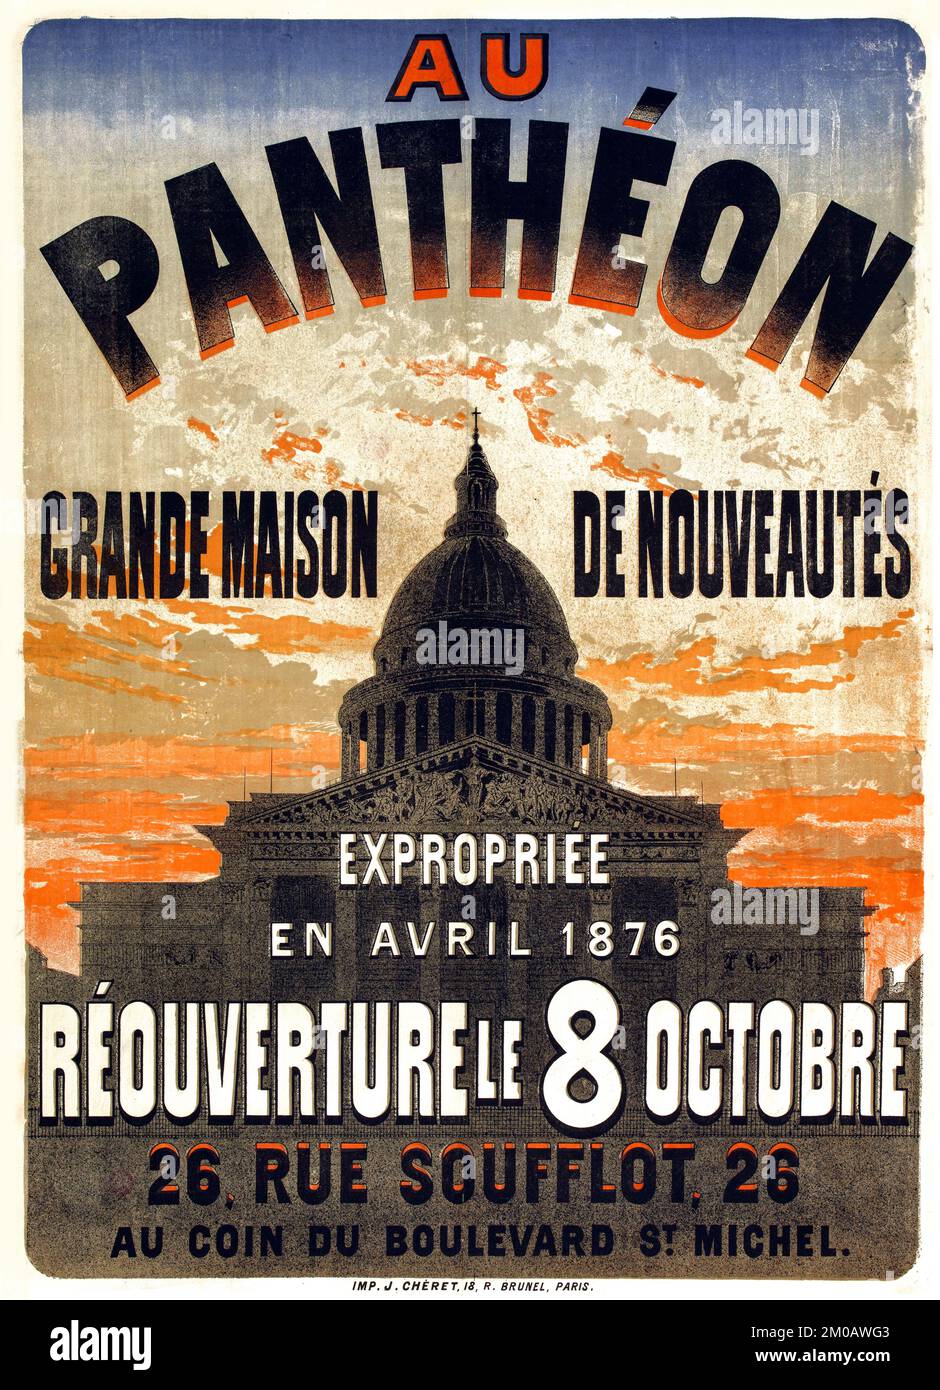 En el Panteón, una gran casa de novedades expropiada en abril de 1876, reabierta el 8 de octubre de 26 rue Soufflot - cartel de Jules Chéret c 1876 Foto de stock